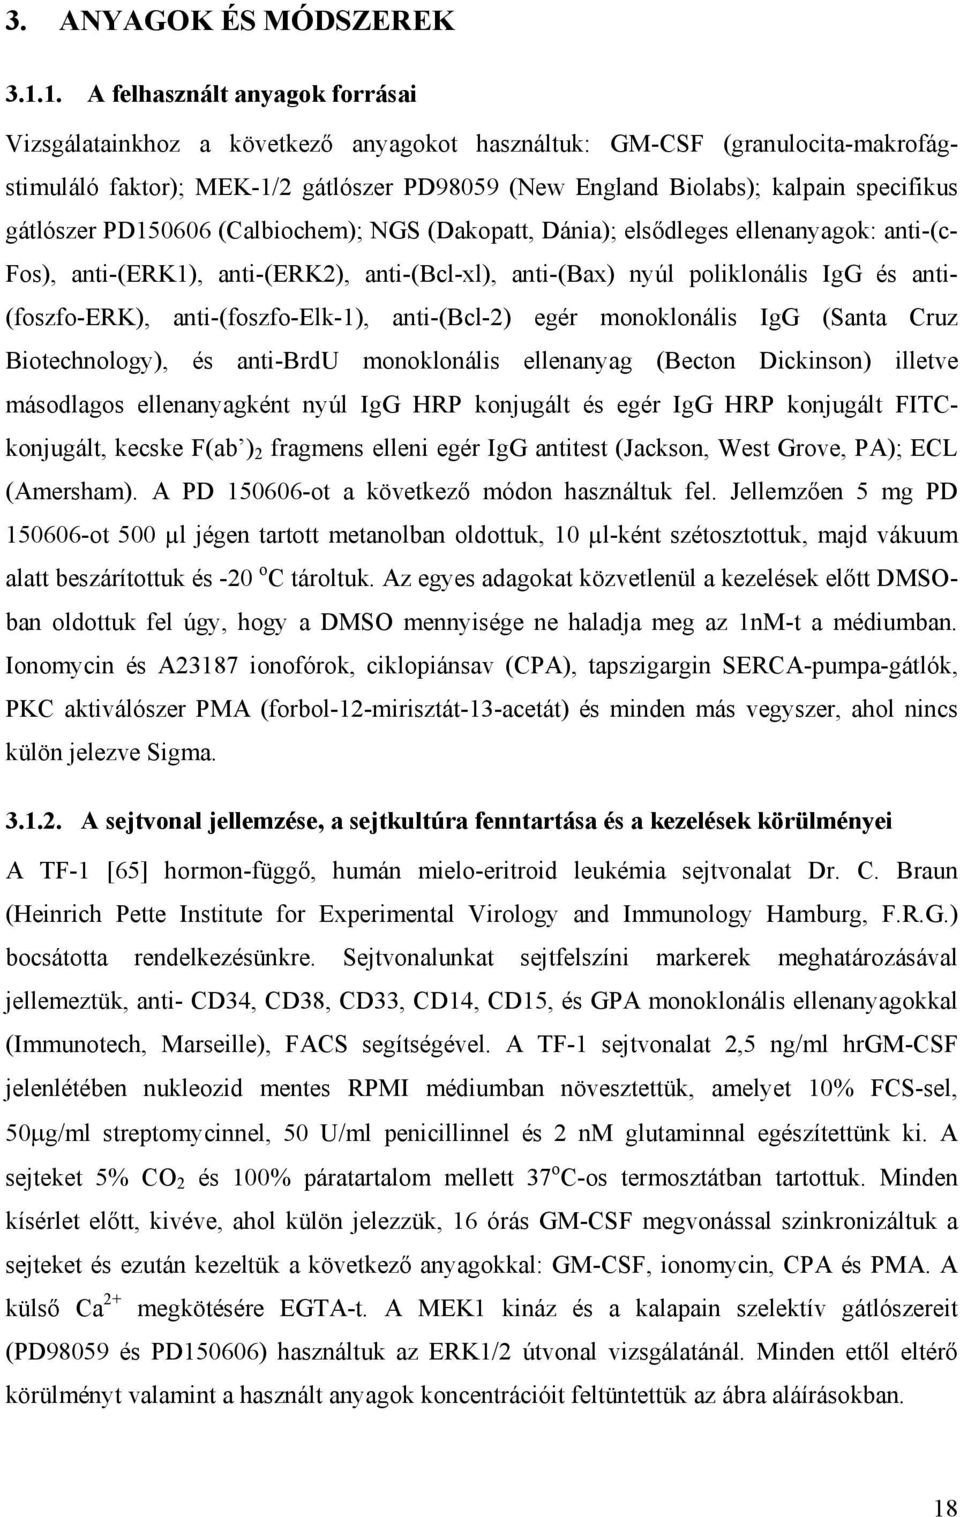 gátlószer PD150606 (Calbiochem); NGS (Dakopatt, Dánia); elsődleges ellenanyagok: anti-(c- Fos), anti-(erk1), anti-(erk2), anti-(bcl-xl), anti-(bax) nyúl poliklonális IgG és anti- (foszfo-erk),